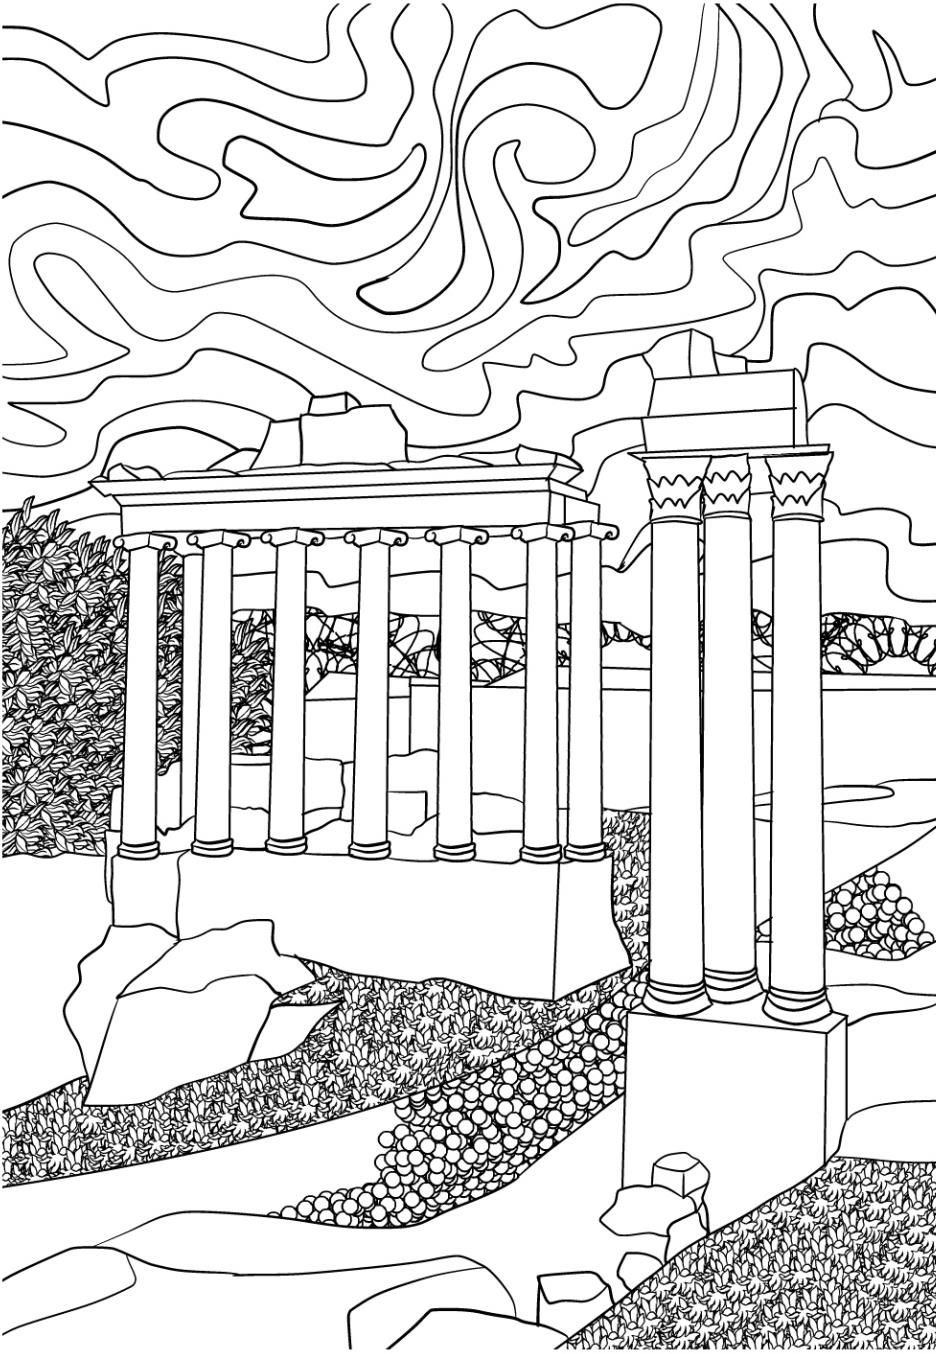 C:\\Users\\Admin\\Desktop\\rome_raskras01\\Изображения_Рим\\17-2 Храм Сатурна и Римский Форум в Риме.jpg